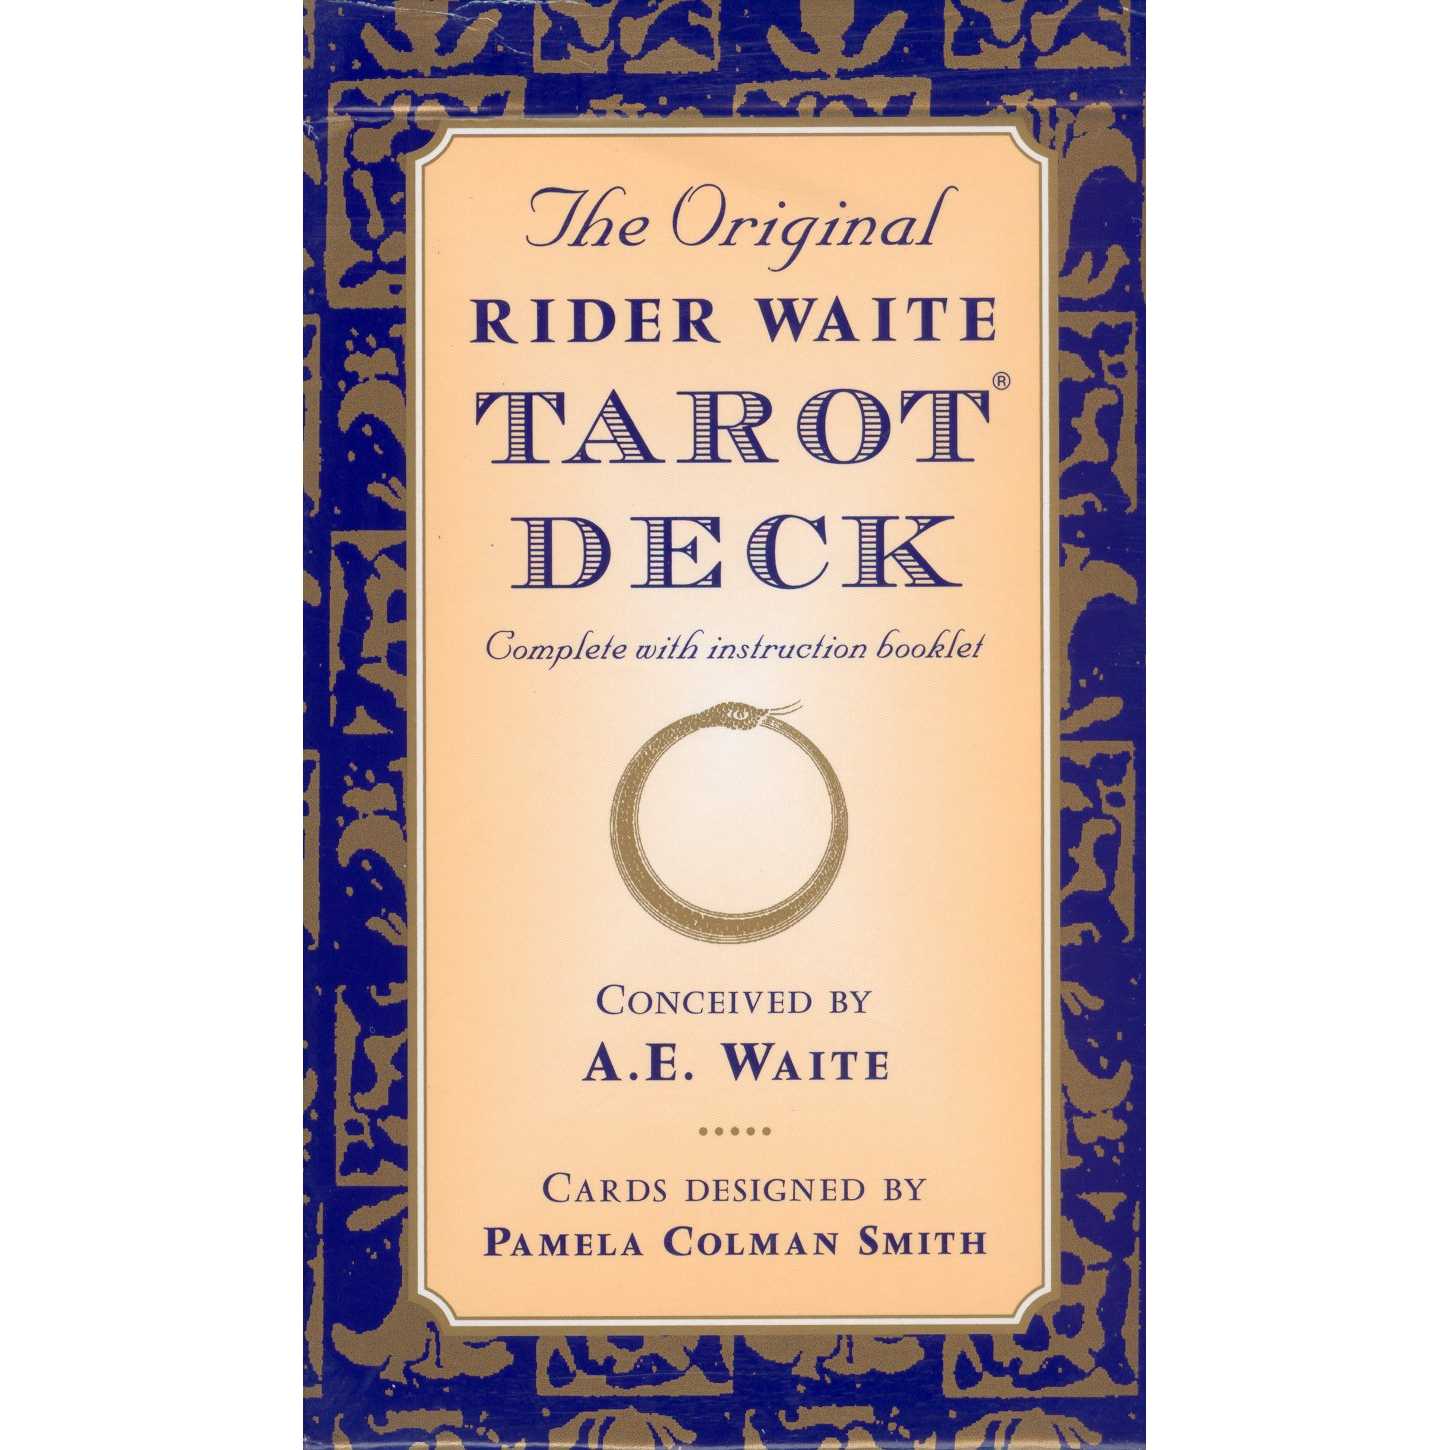 Rider The Original Rider Waite Tarot Deck By A.E. Waite